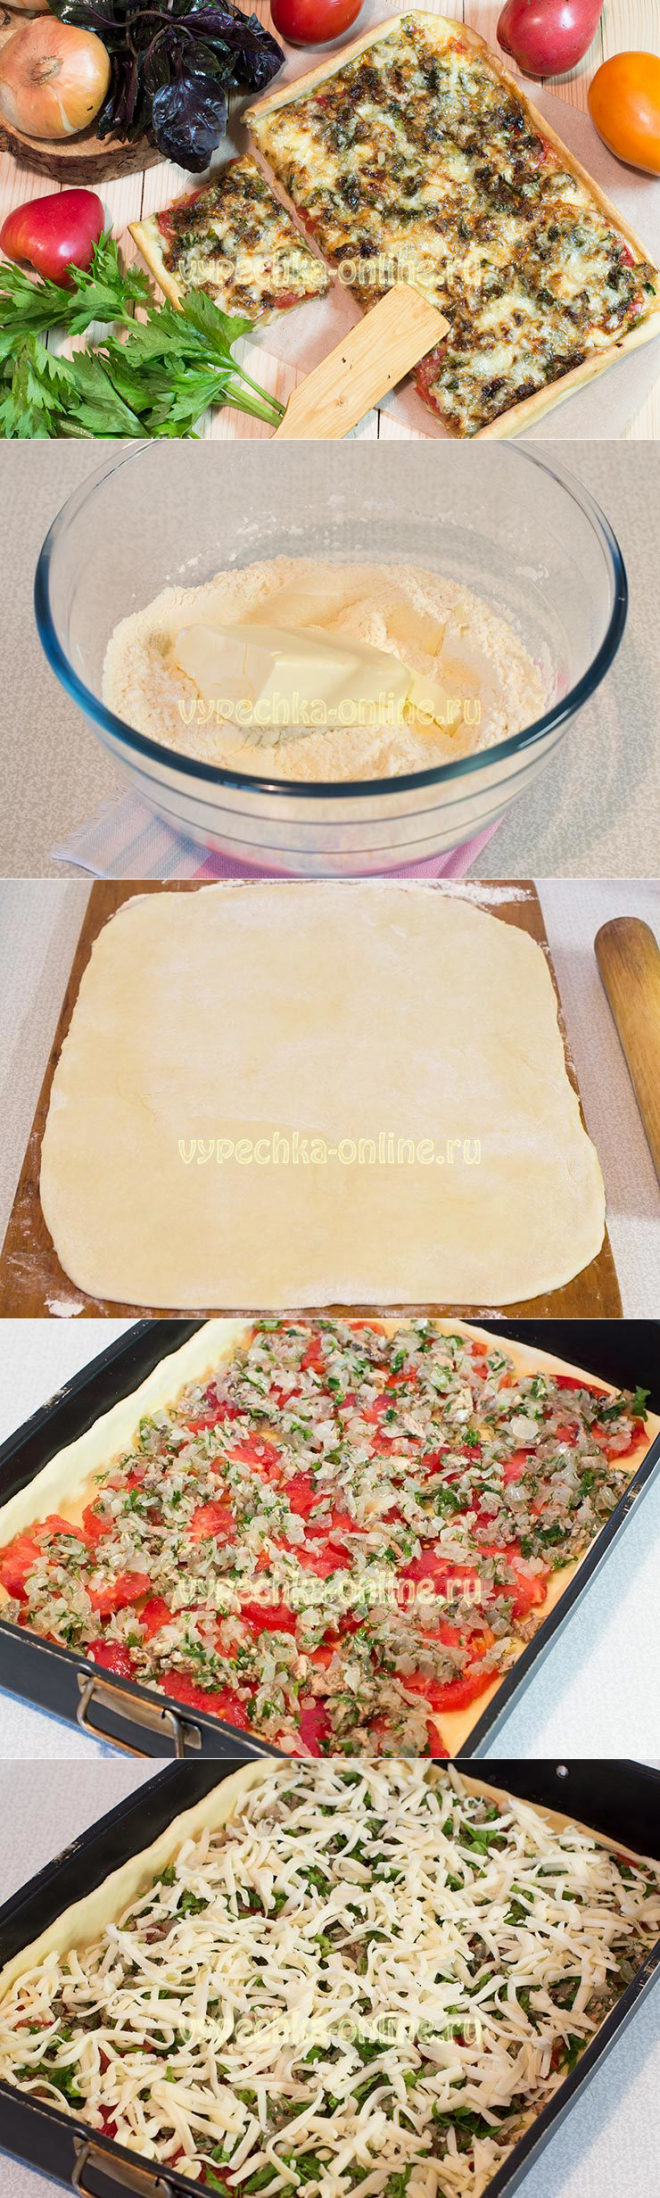 тесто для пиццы начинка для пиццы в домашних условиях фото 78